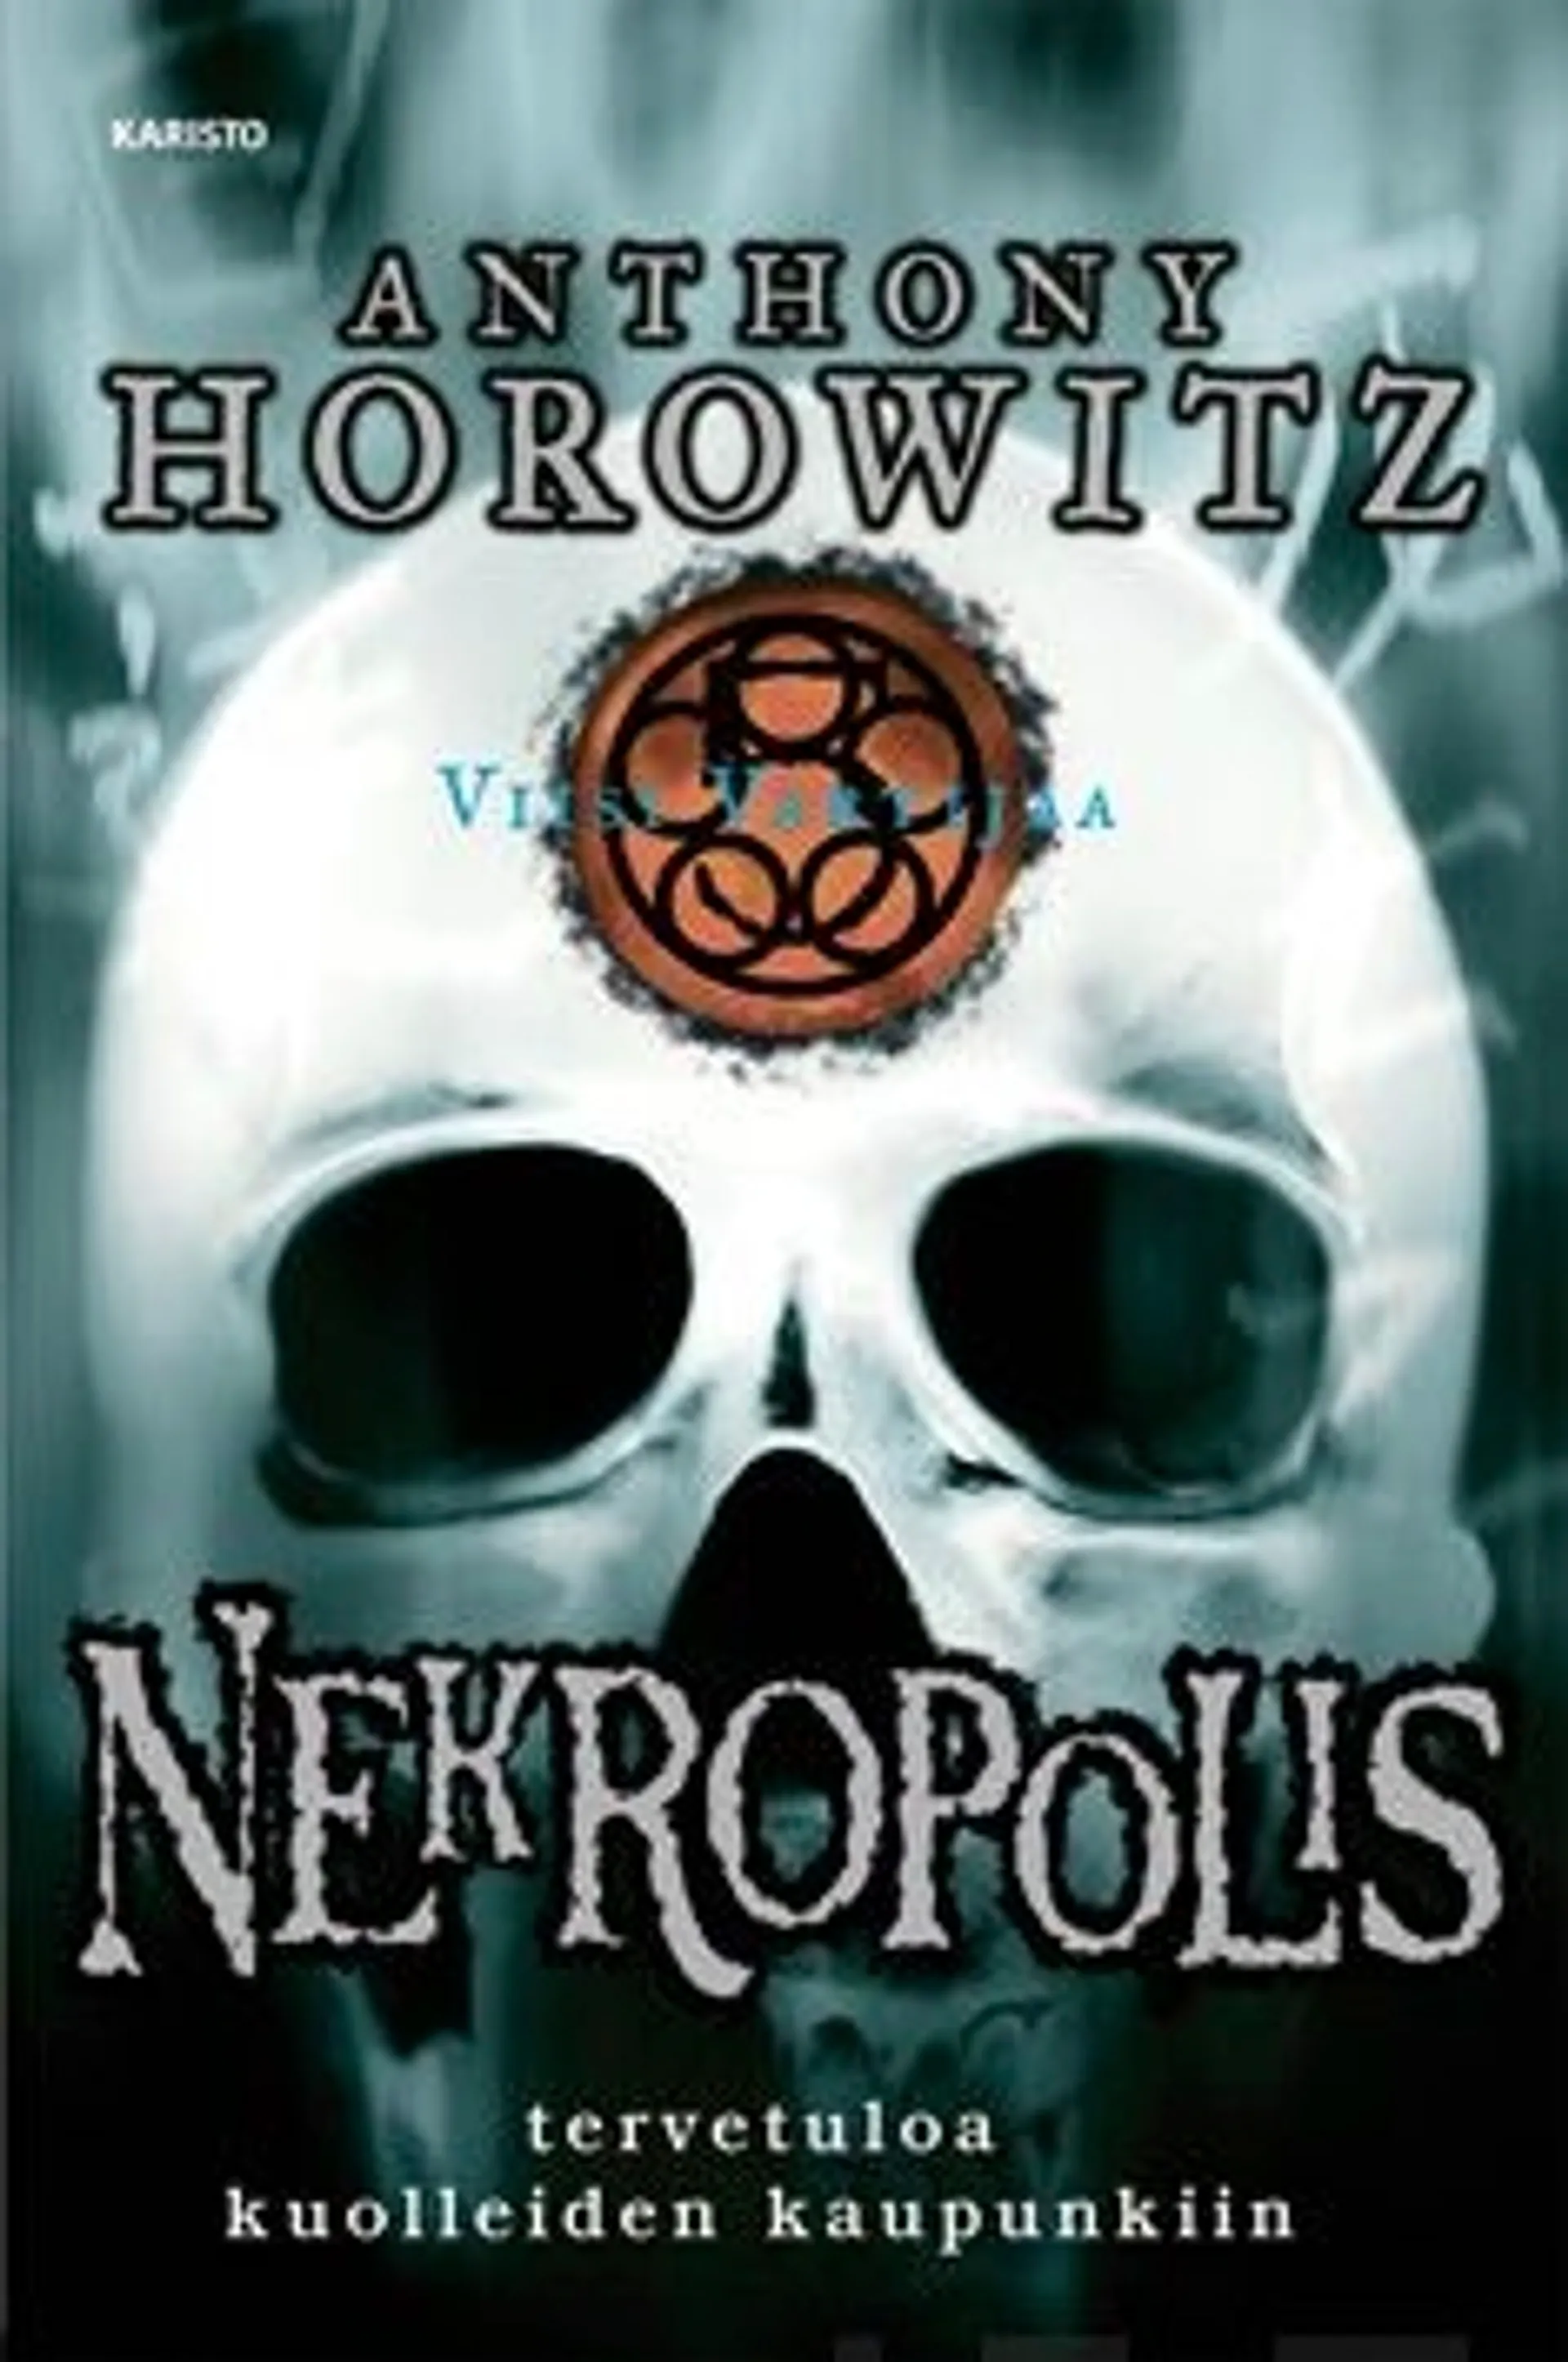 Horowitz, Nekropolis